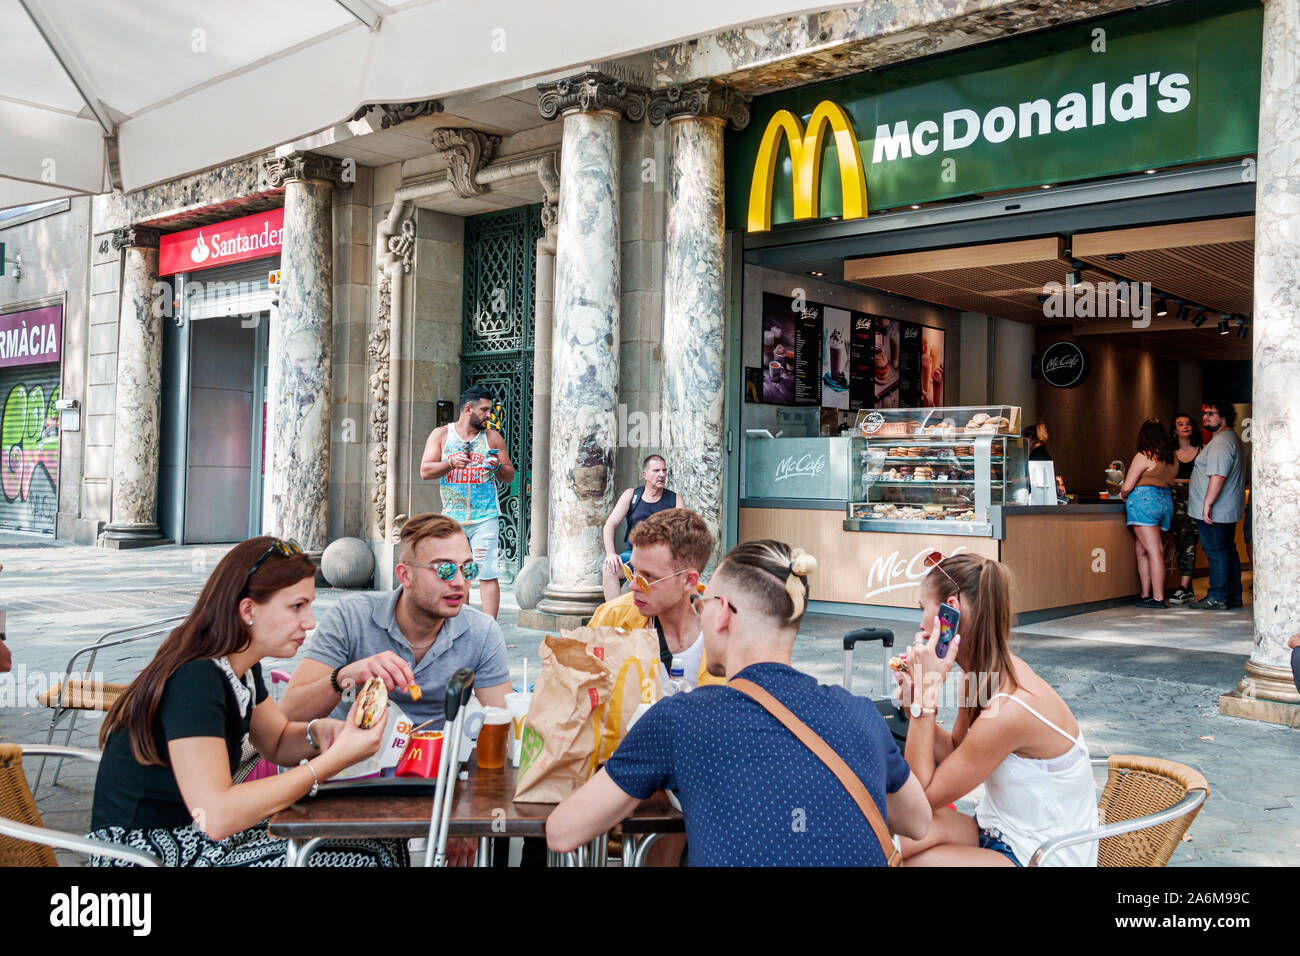 Barcelona España,Catalonia Passeig de Gracia,McDonald's, restaurante,comida rápida,afuera,mesa de acera,comedor al aire libre,hombre,mujer,adultos jóvenes,amigos,comer Foto de stock